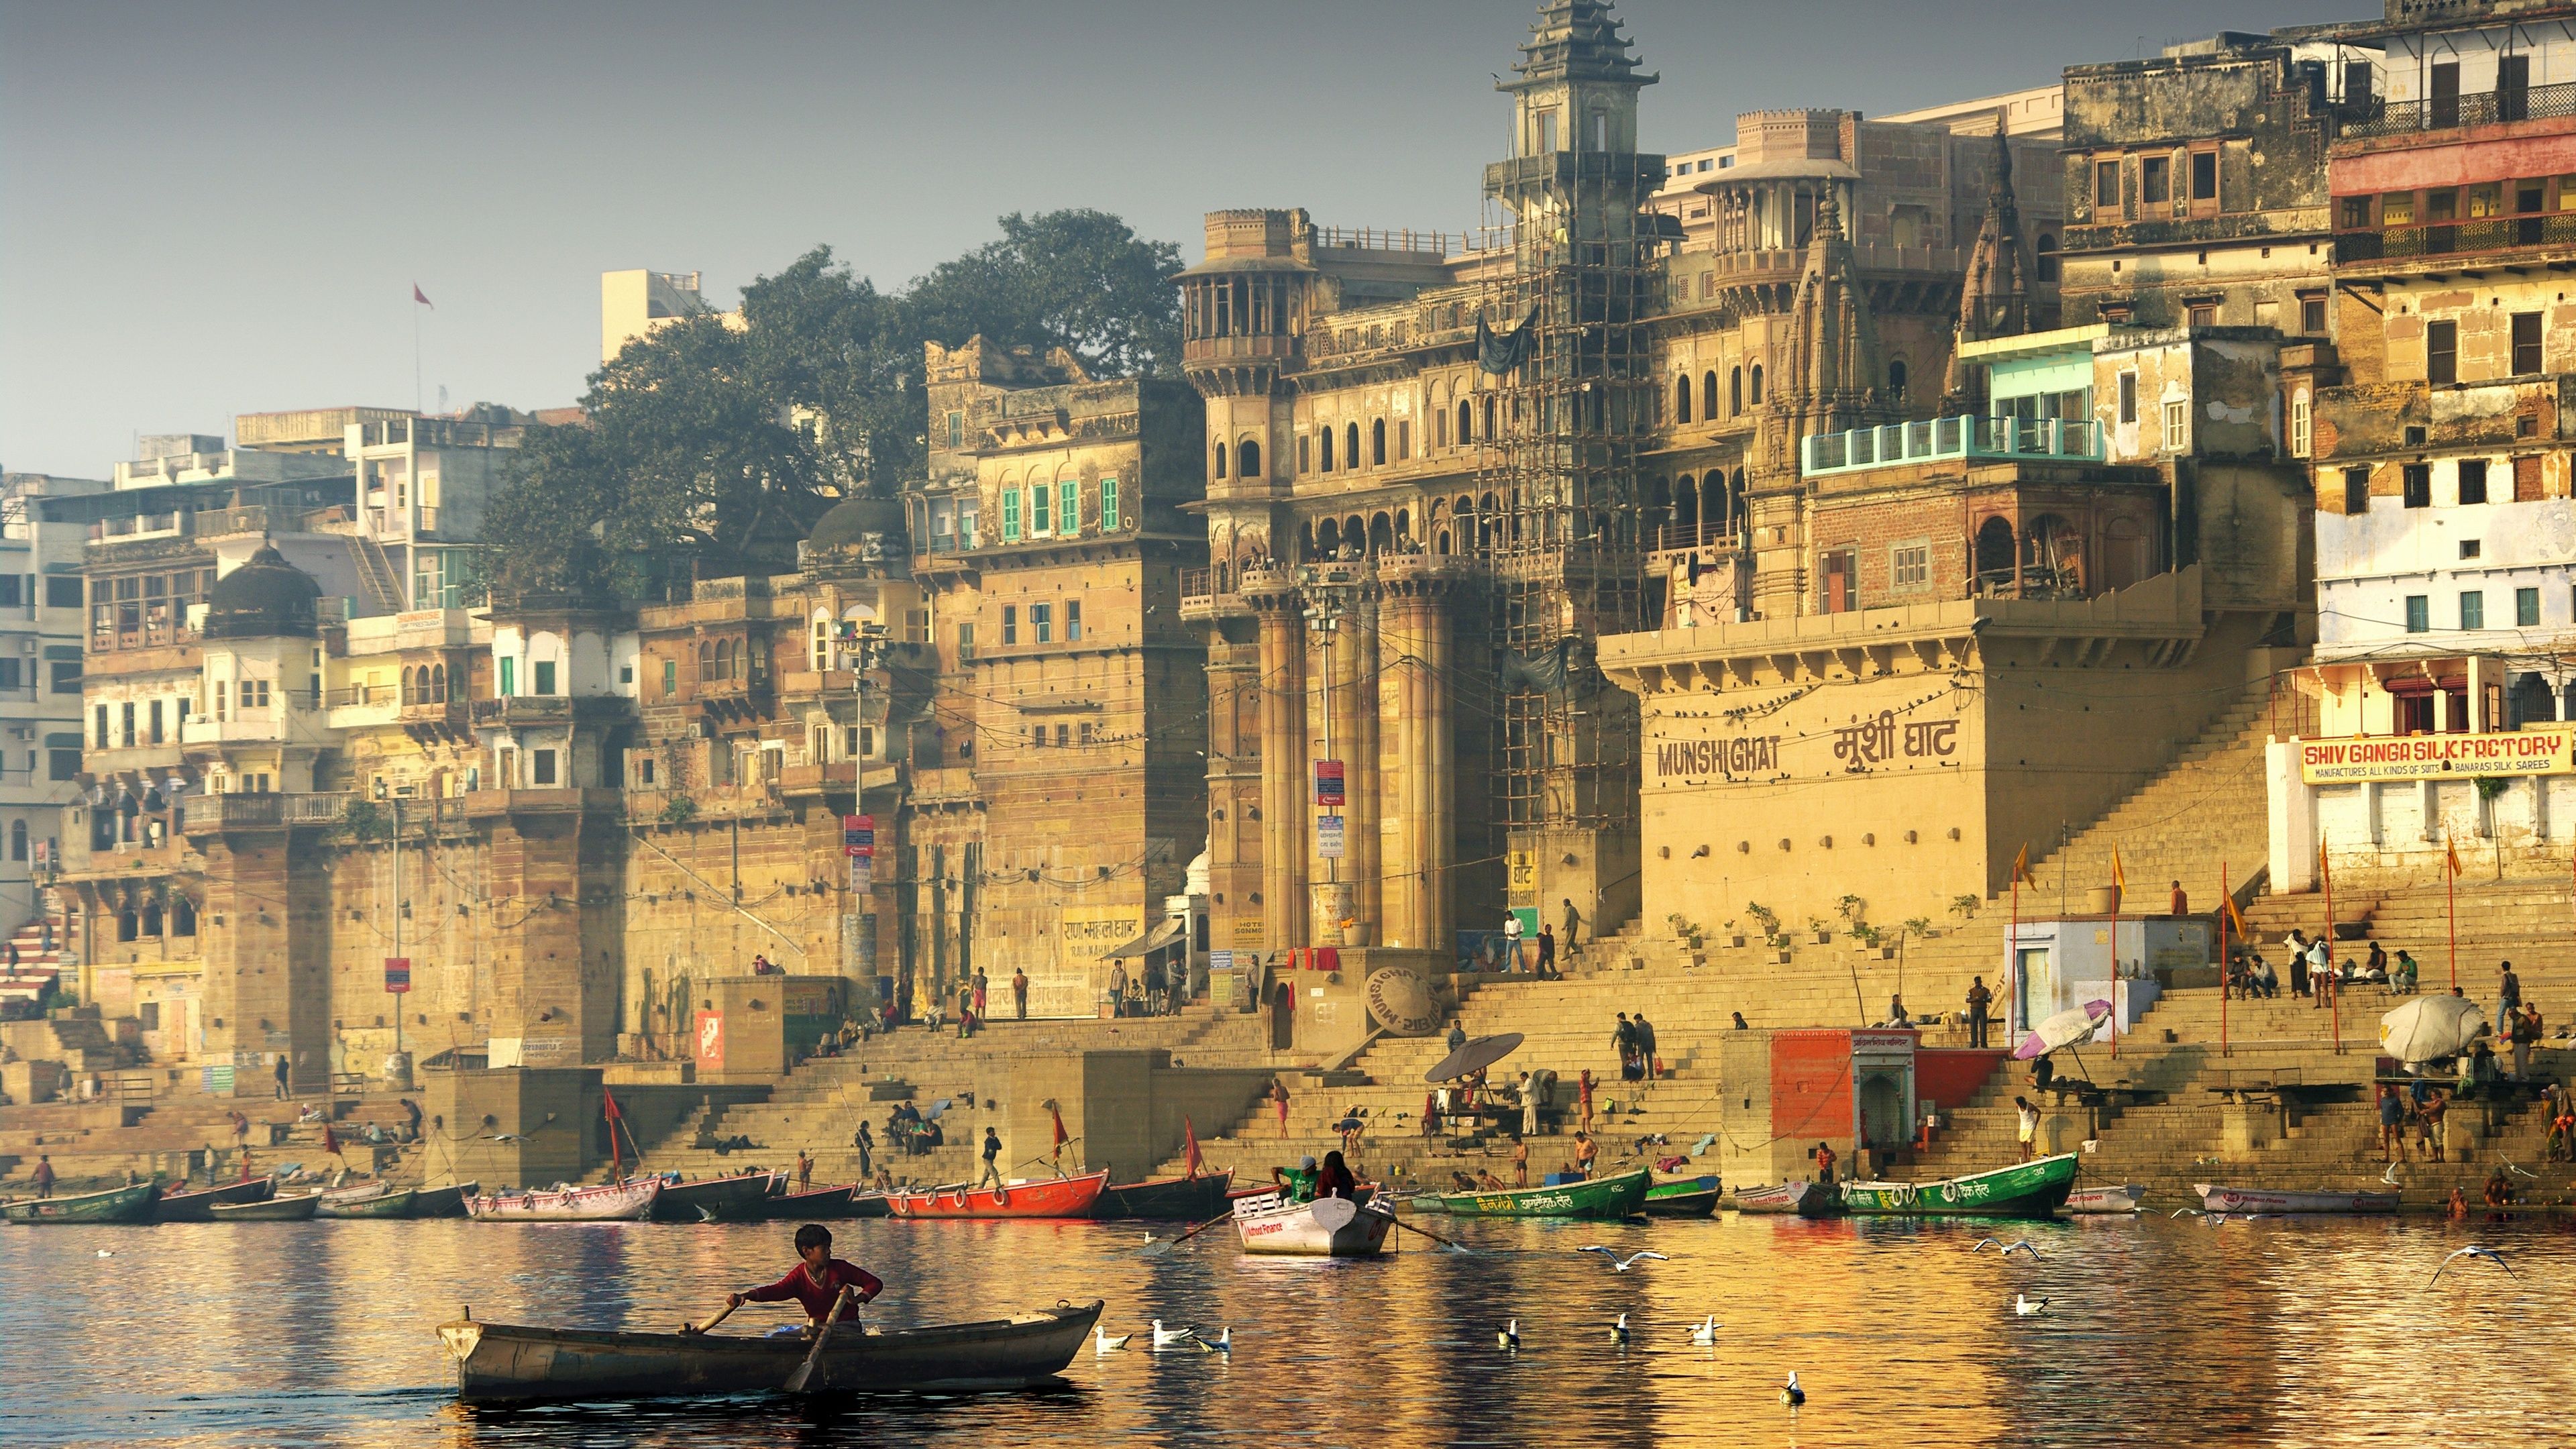 Wallpaper India, river, boats, city, seagulls 3840x2160 UHD 4K